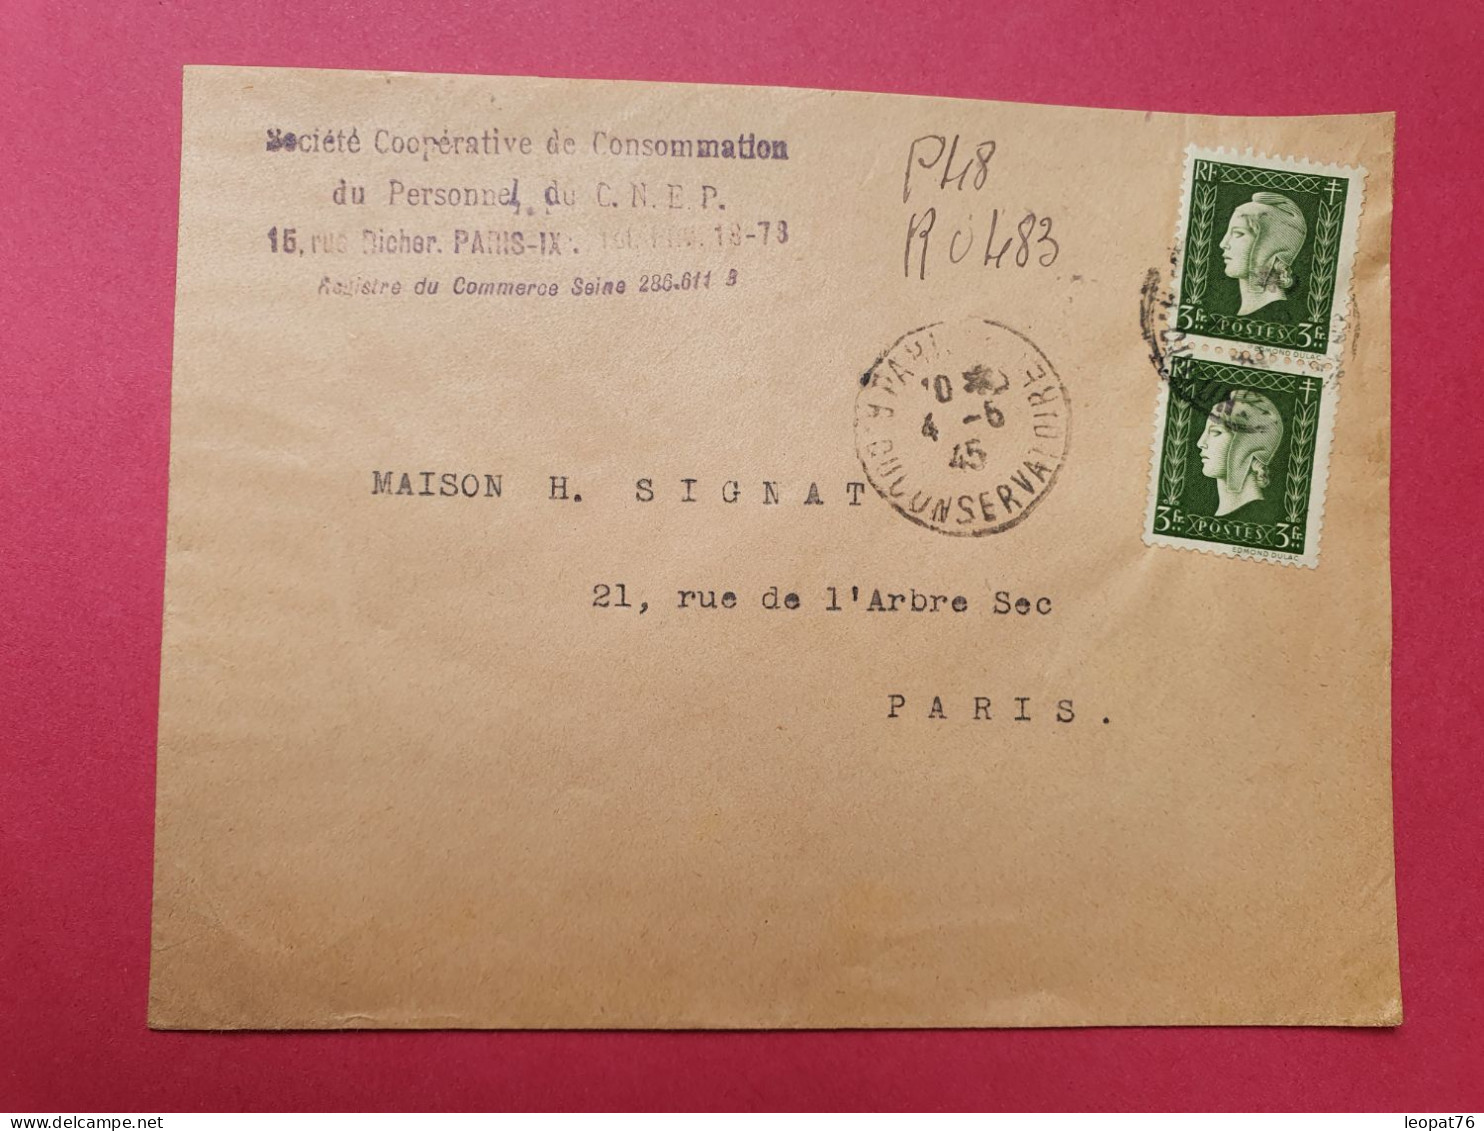 Dulac 3fr En Paire Sur Enveloppe En Recommandé Provisoire De Paris Pour Paris En 1945  - Réf 3502 - 1921-1960: Moderne